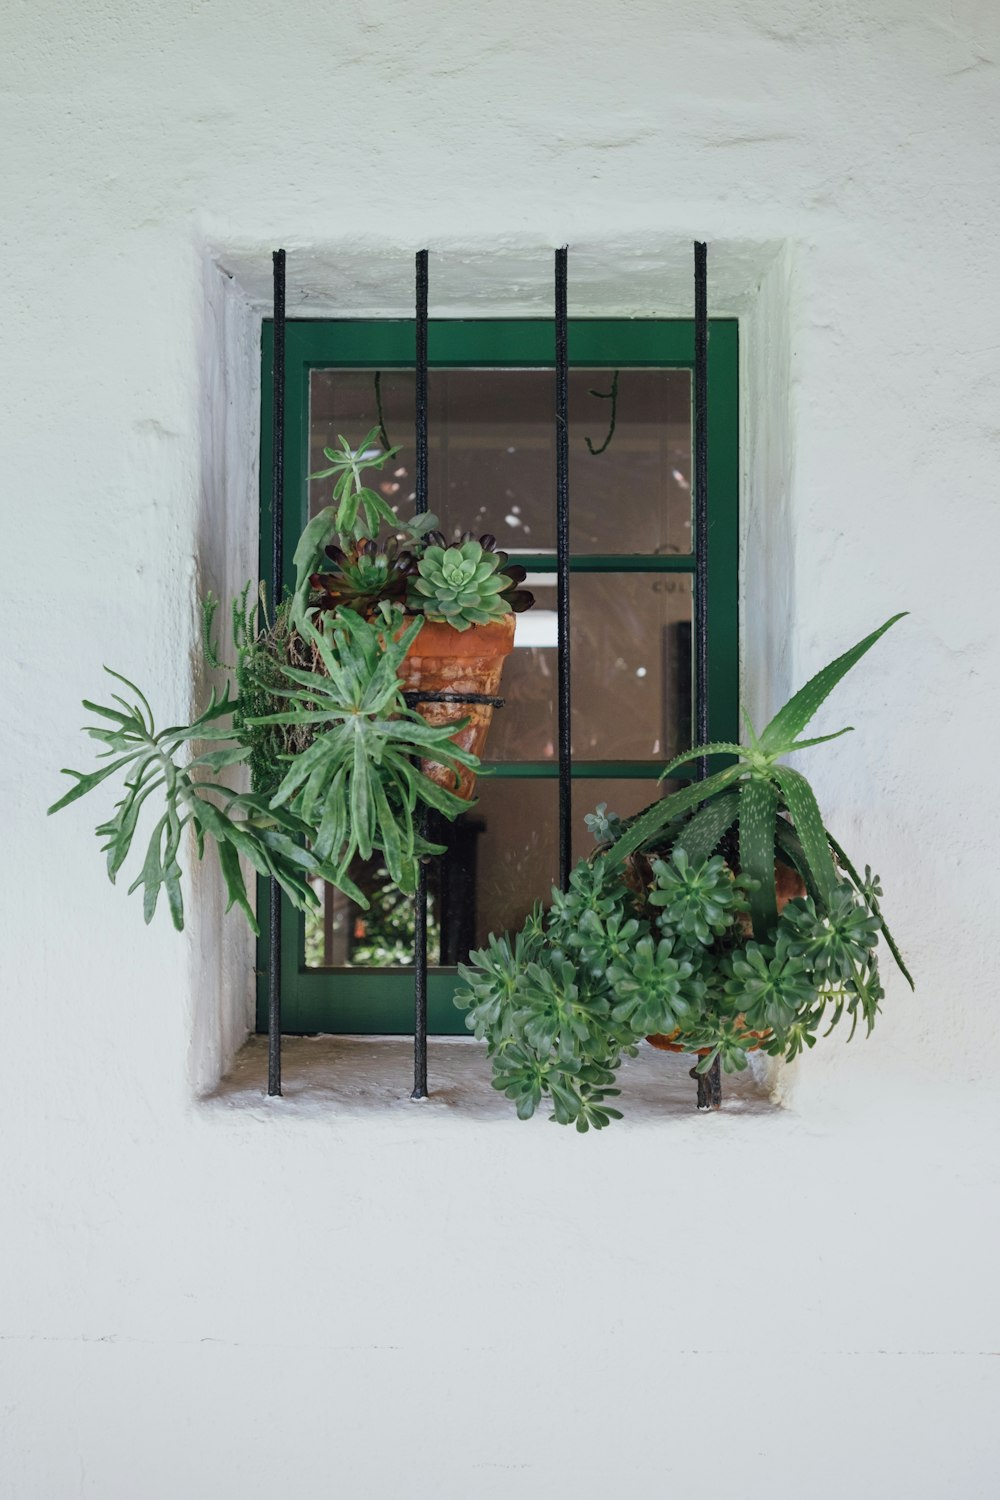 Piante appese su una finestra incorniciata in metallo verde